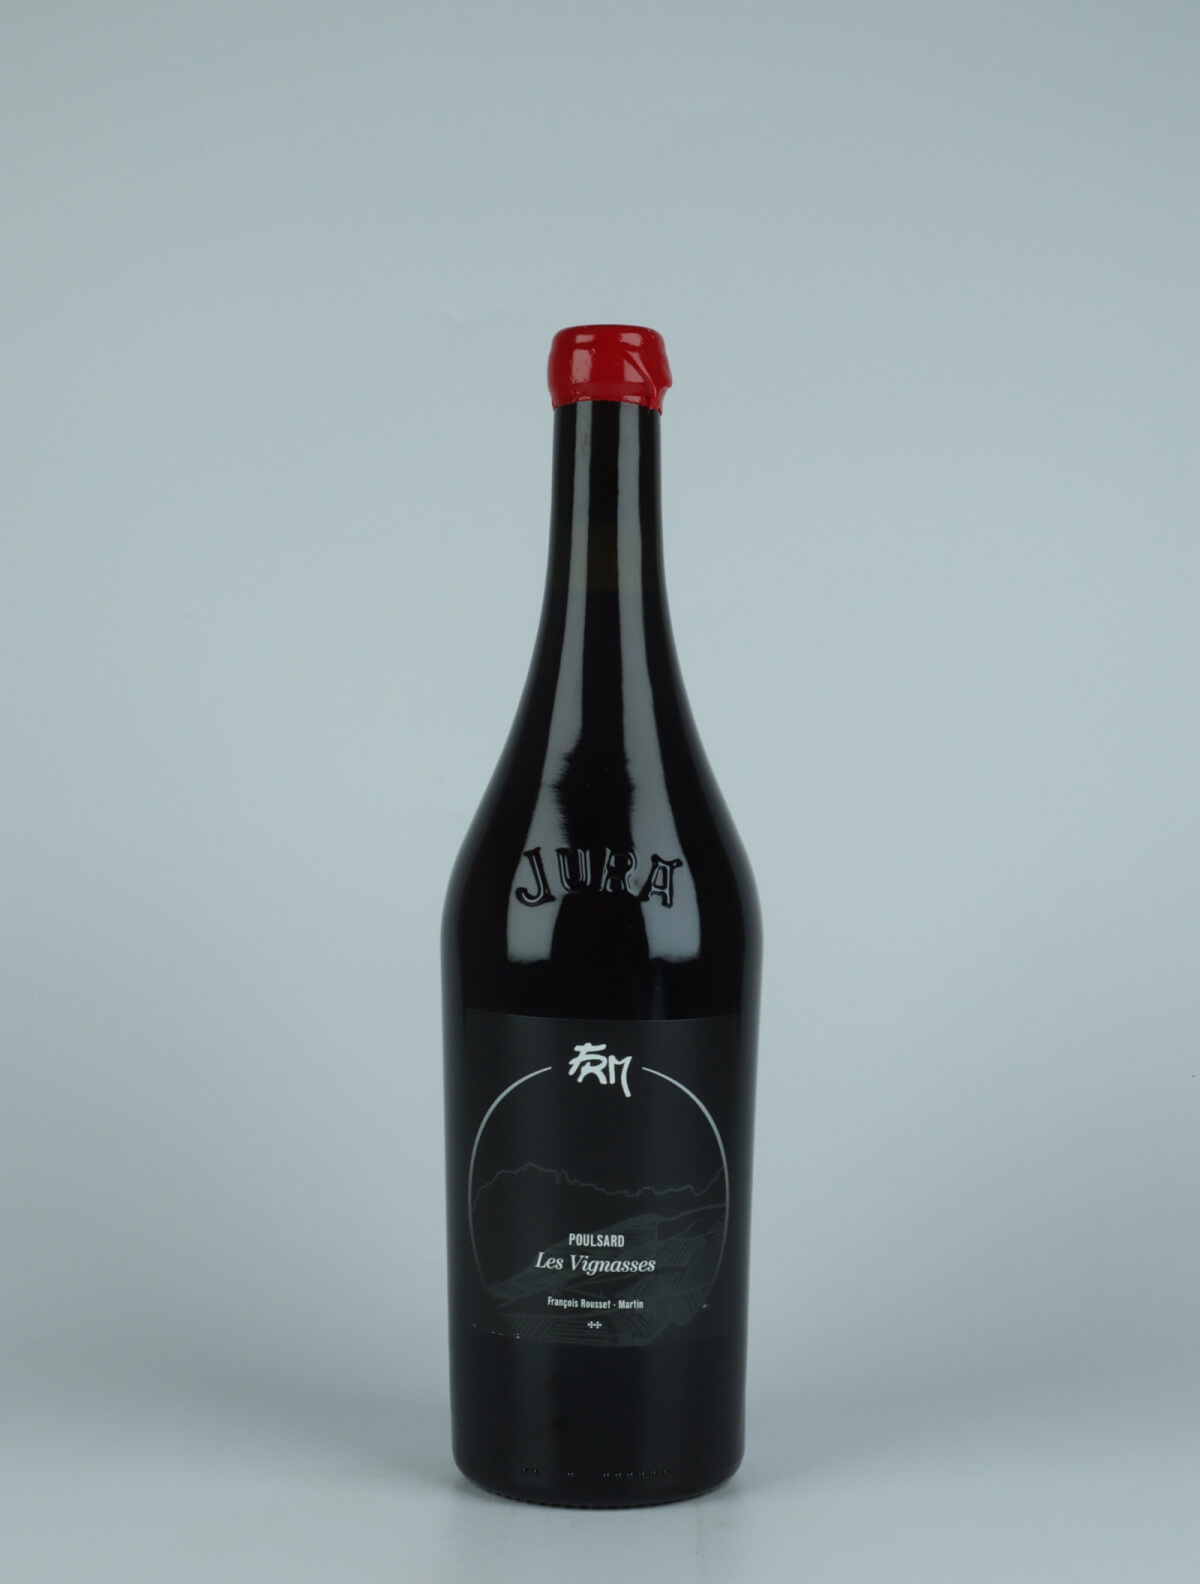 En flaske 2019 Les Vignasses - Poulsard Rødvin fra François Rousset-Martin, Jura i Frankrig